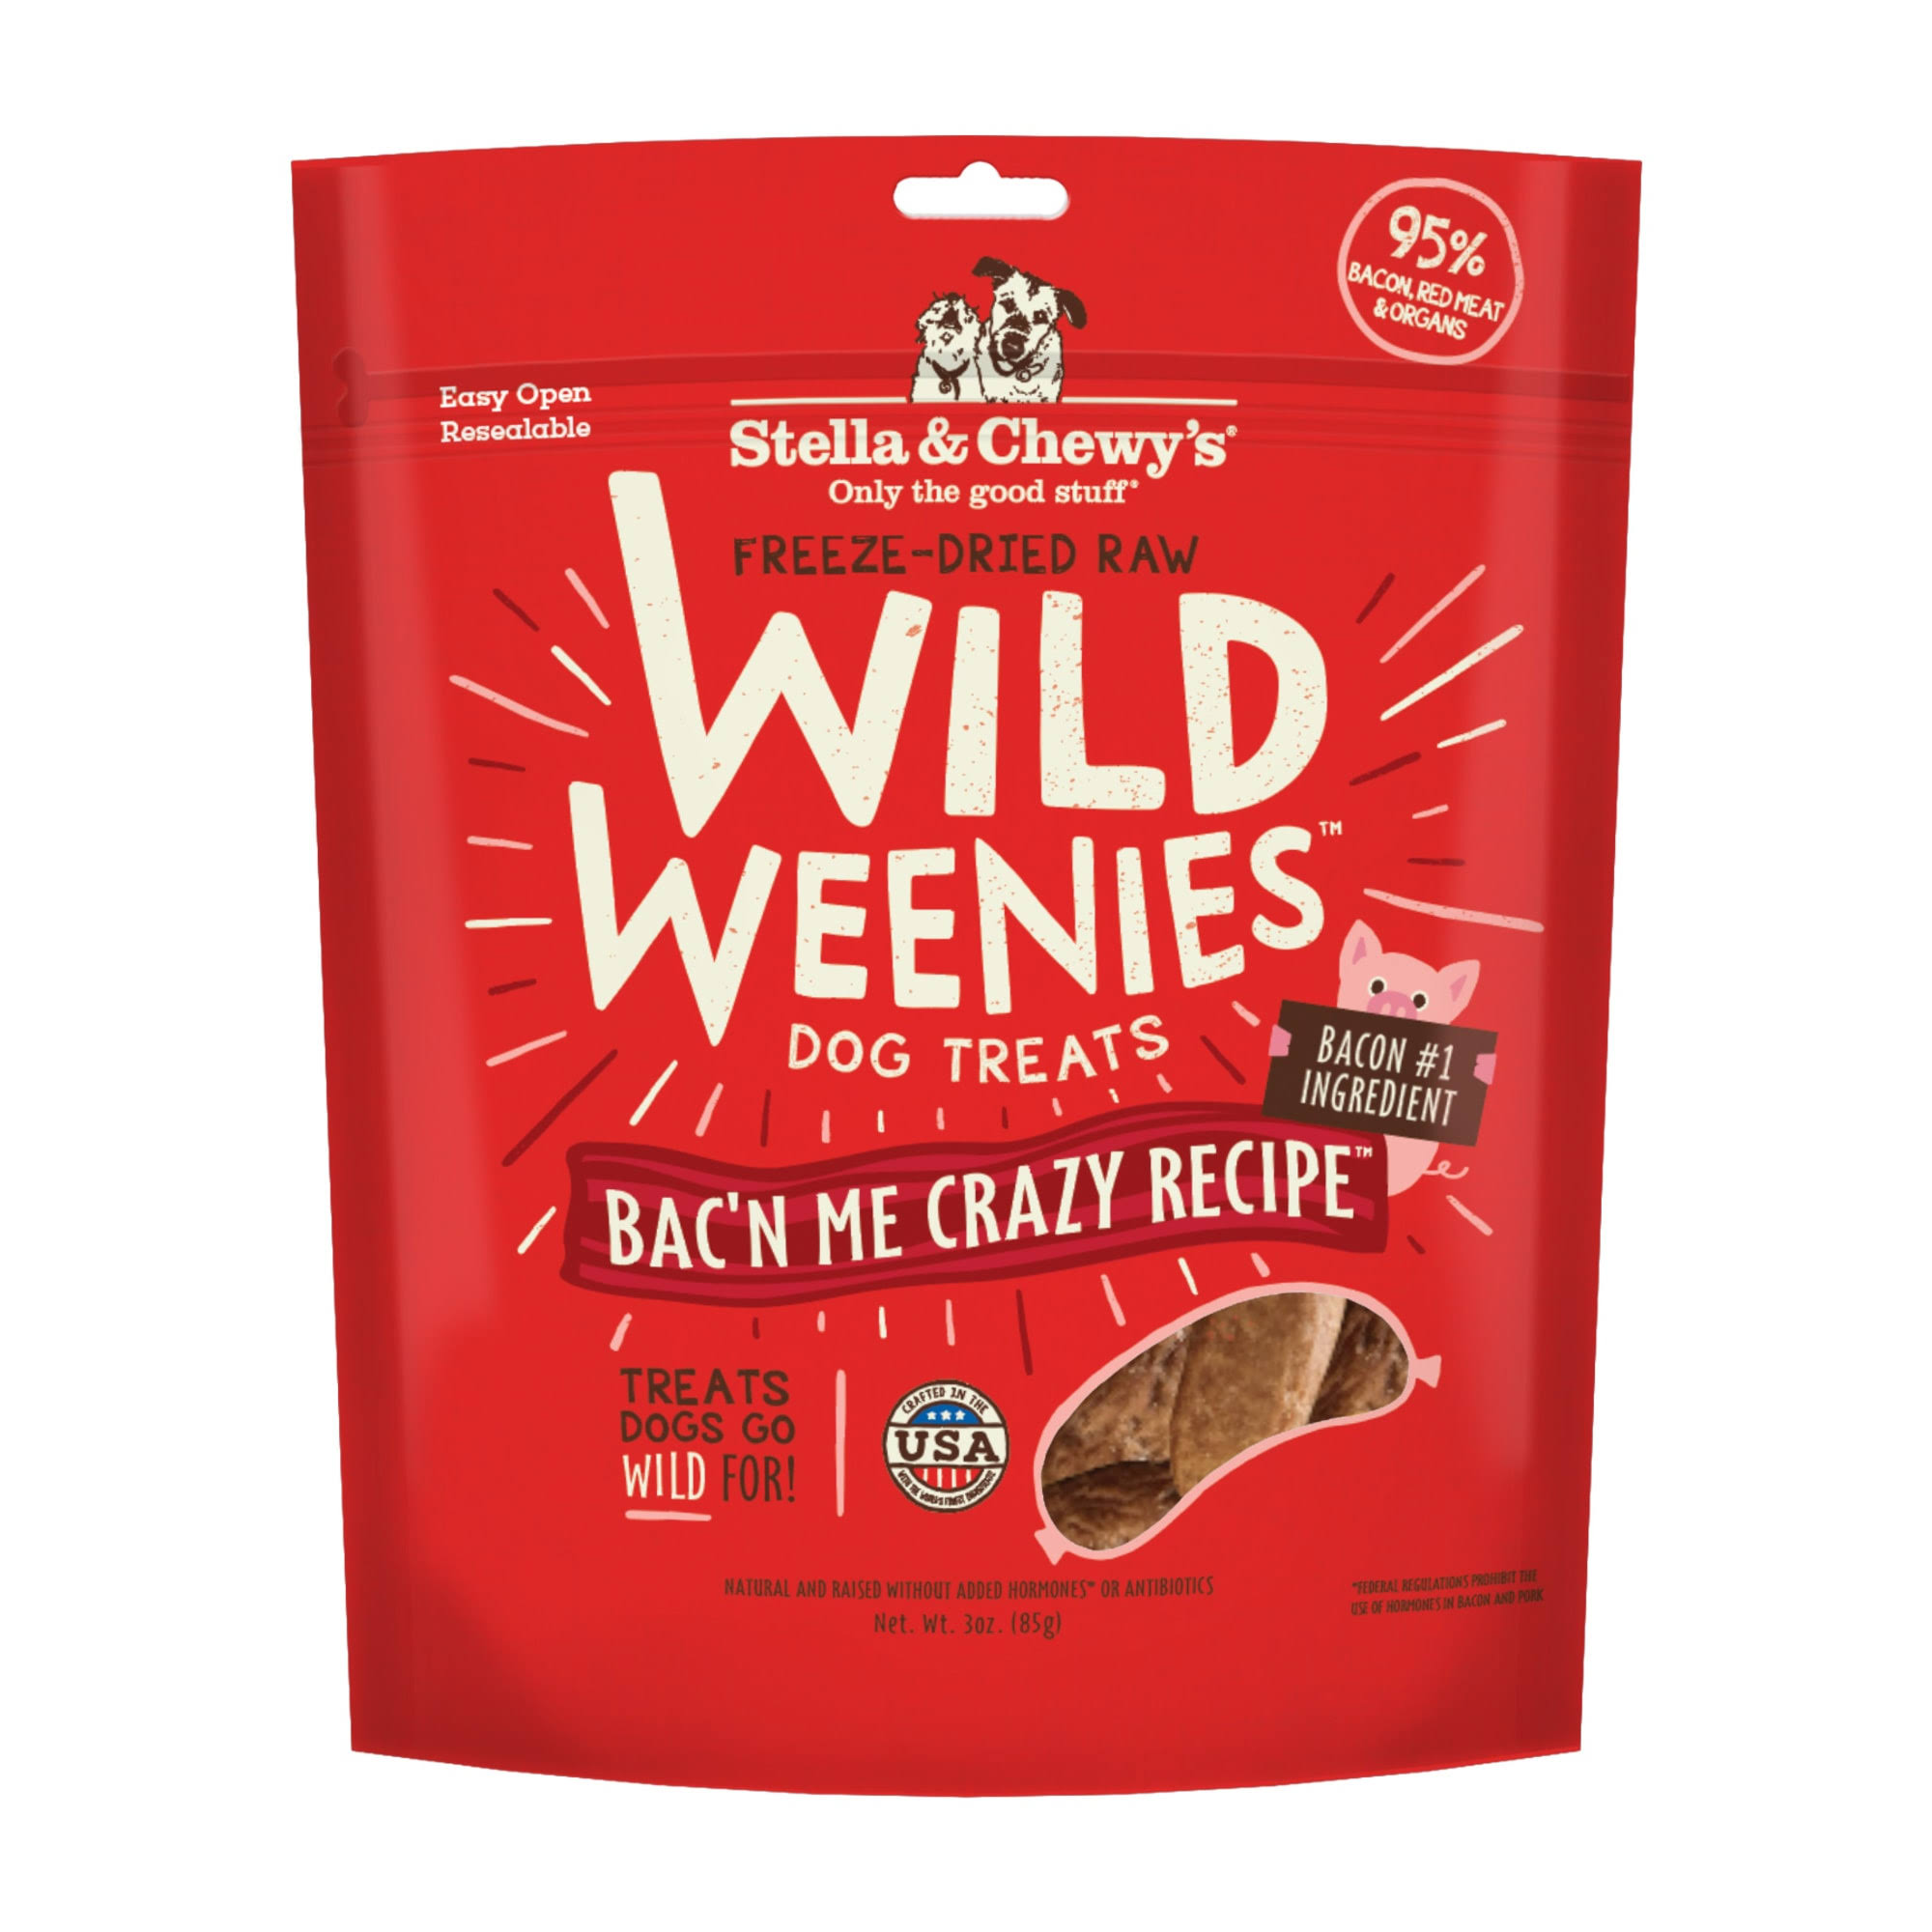 Stella & Chewy's Wild Weenies Freeze-Dried Raw Dog Treats - Bac'n Me Crazy Recipe - 3 oz. Bag